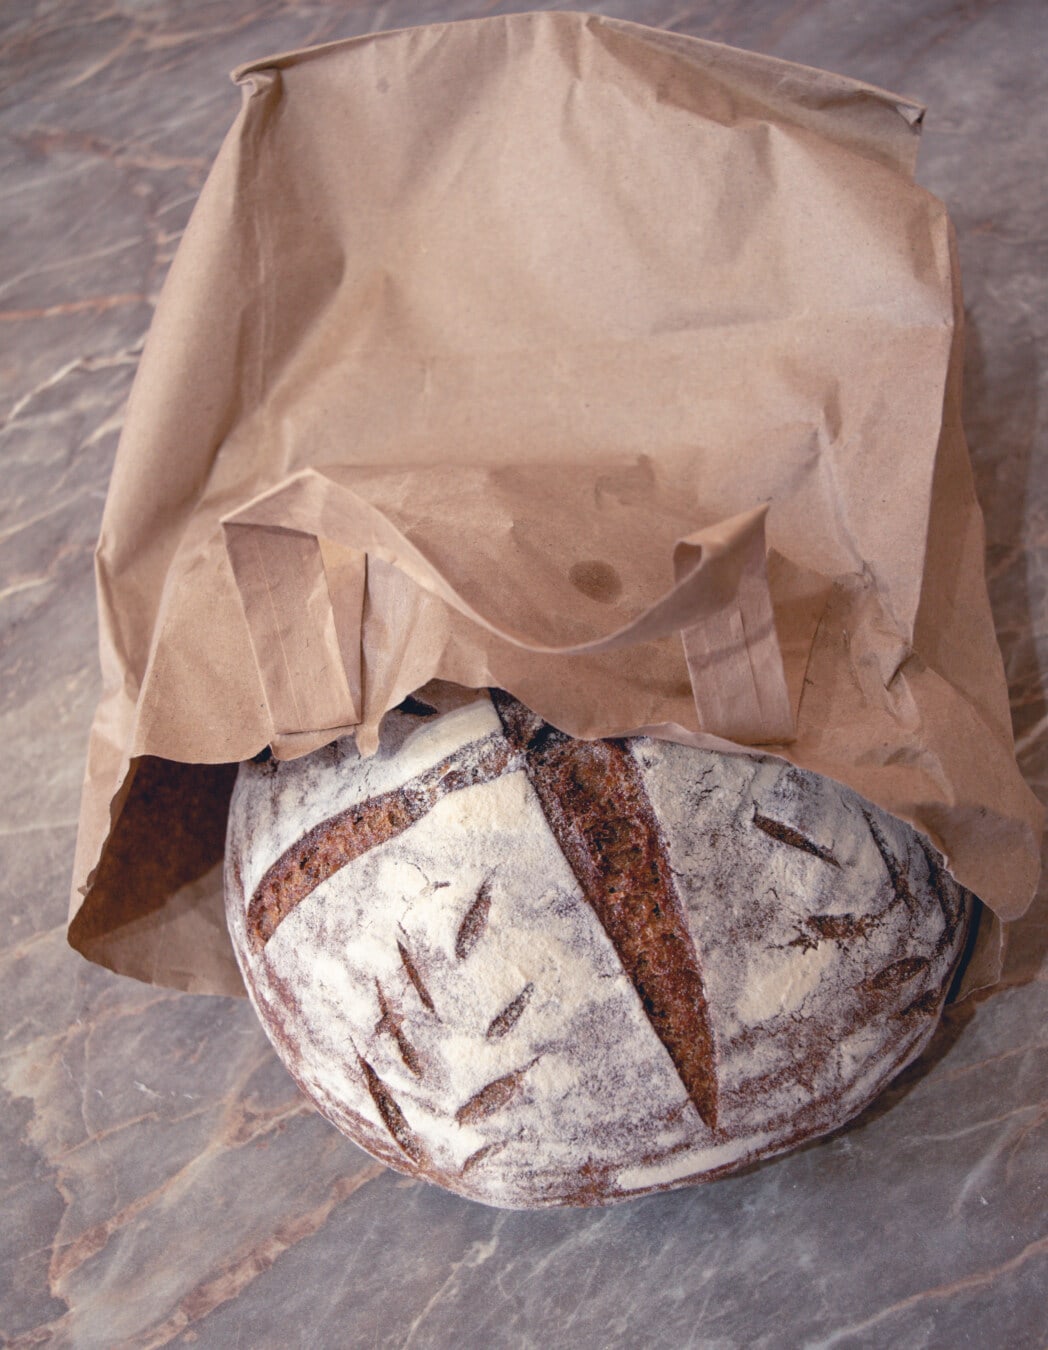 kepekli ekmek, yiyecek, kağıt, Organik, gıda, ekmek, un, geleneksel, pişmiş eşya, kabuk